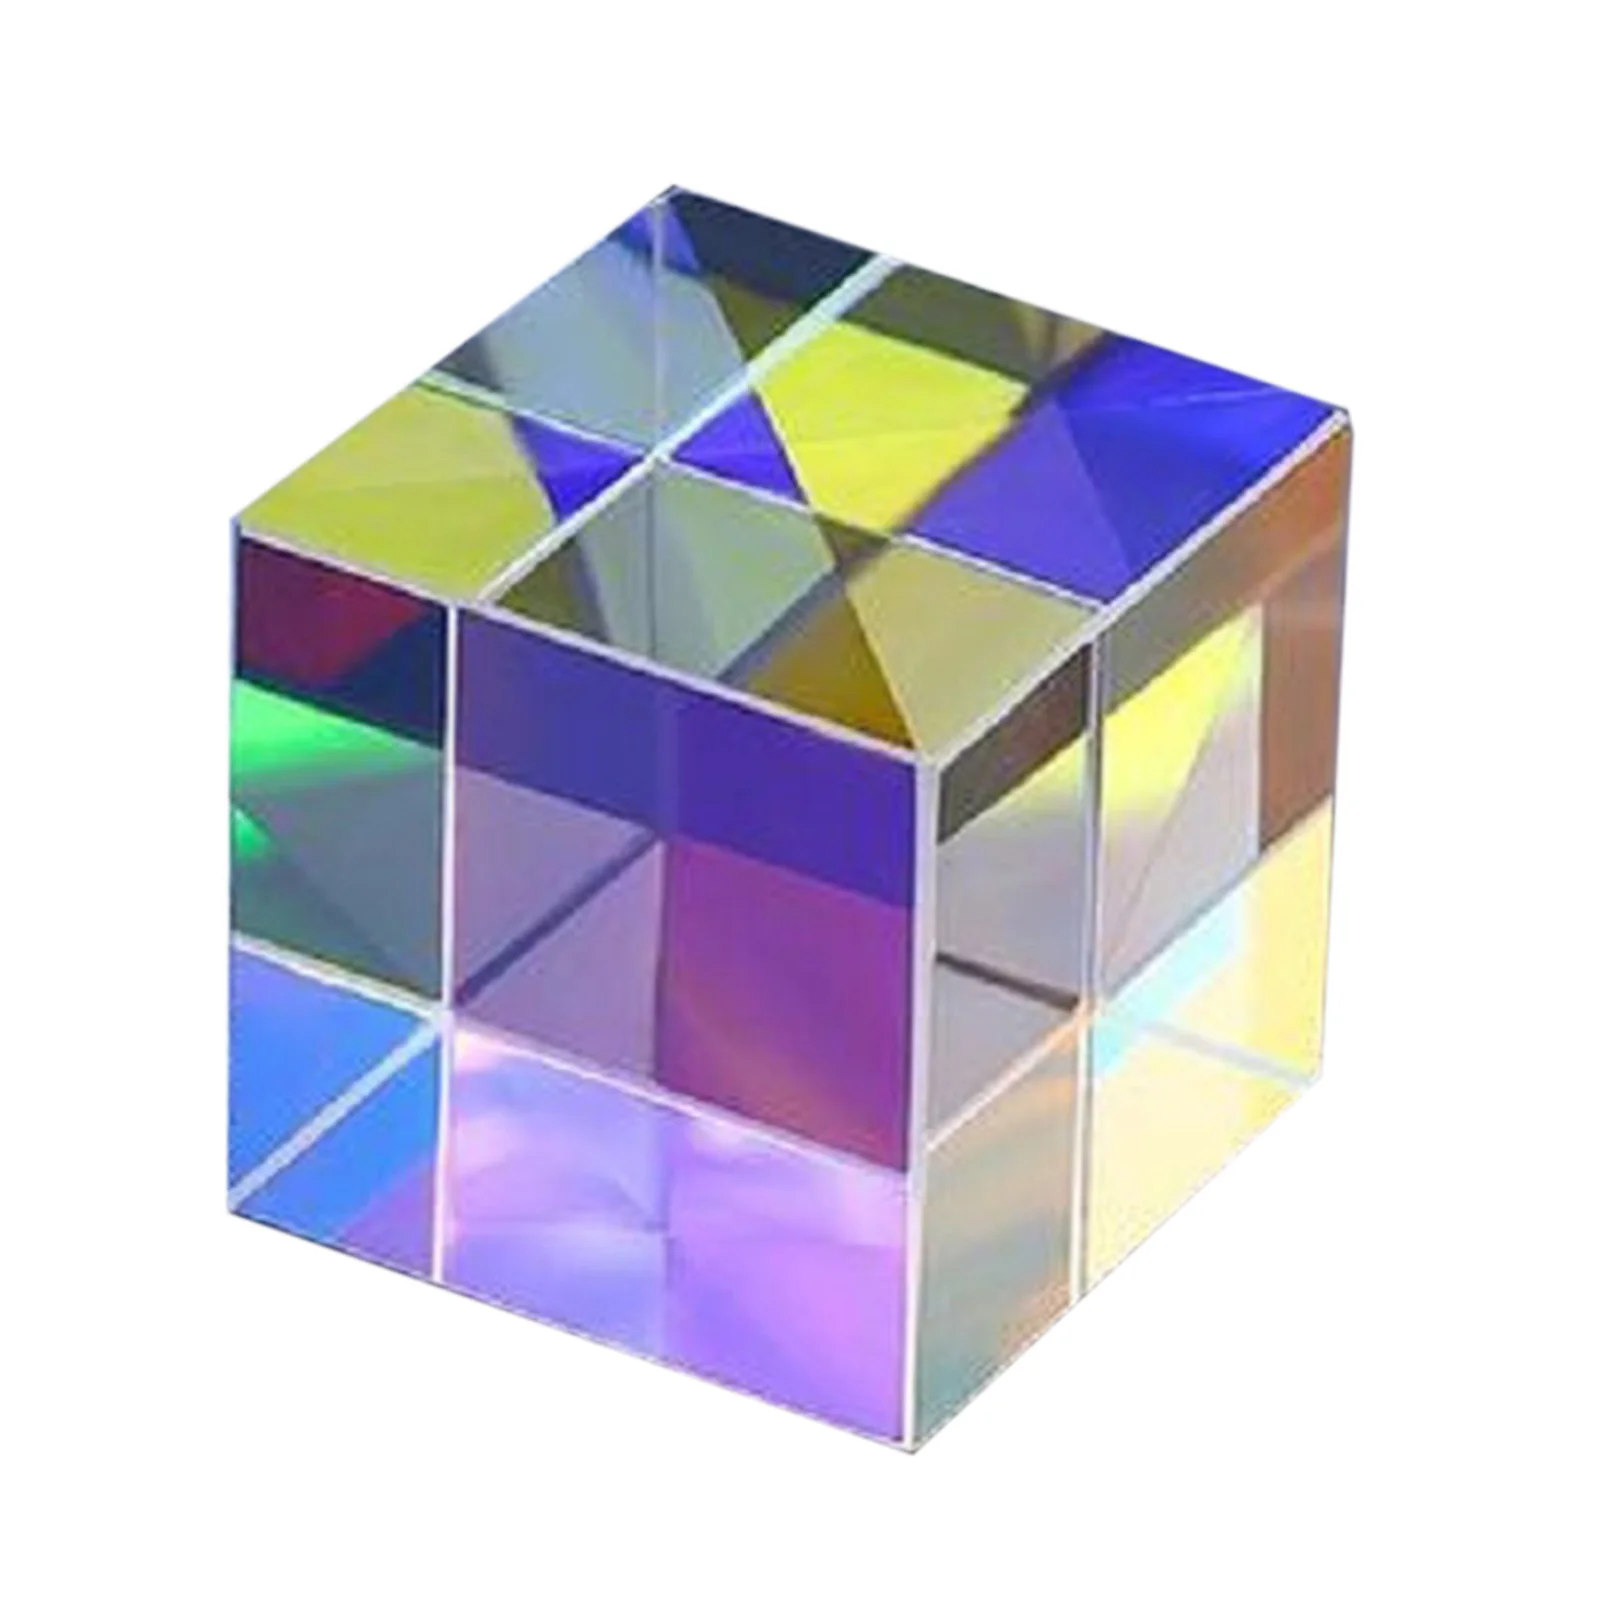 

Разноцветный акриловый кубик, разноцветный призматический кубик, настольное украшение для дома, офиса, научное и образовательное